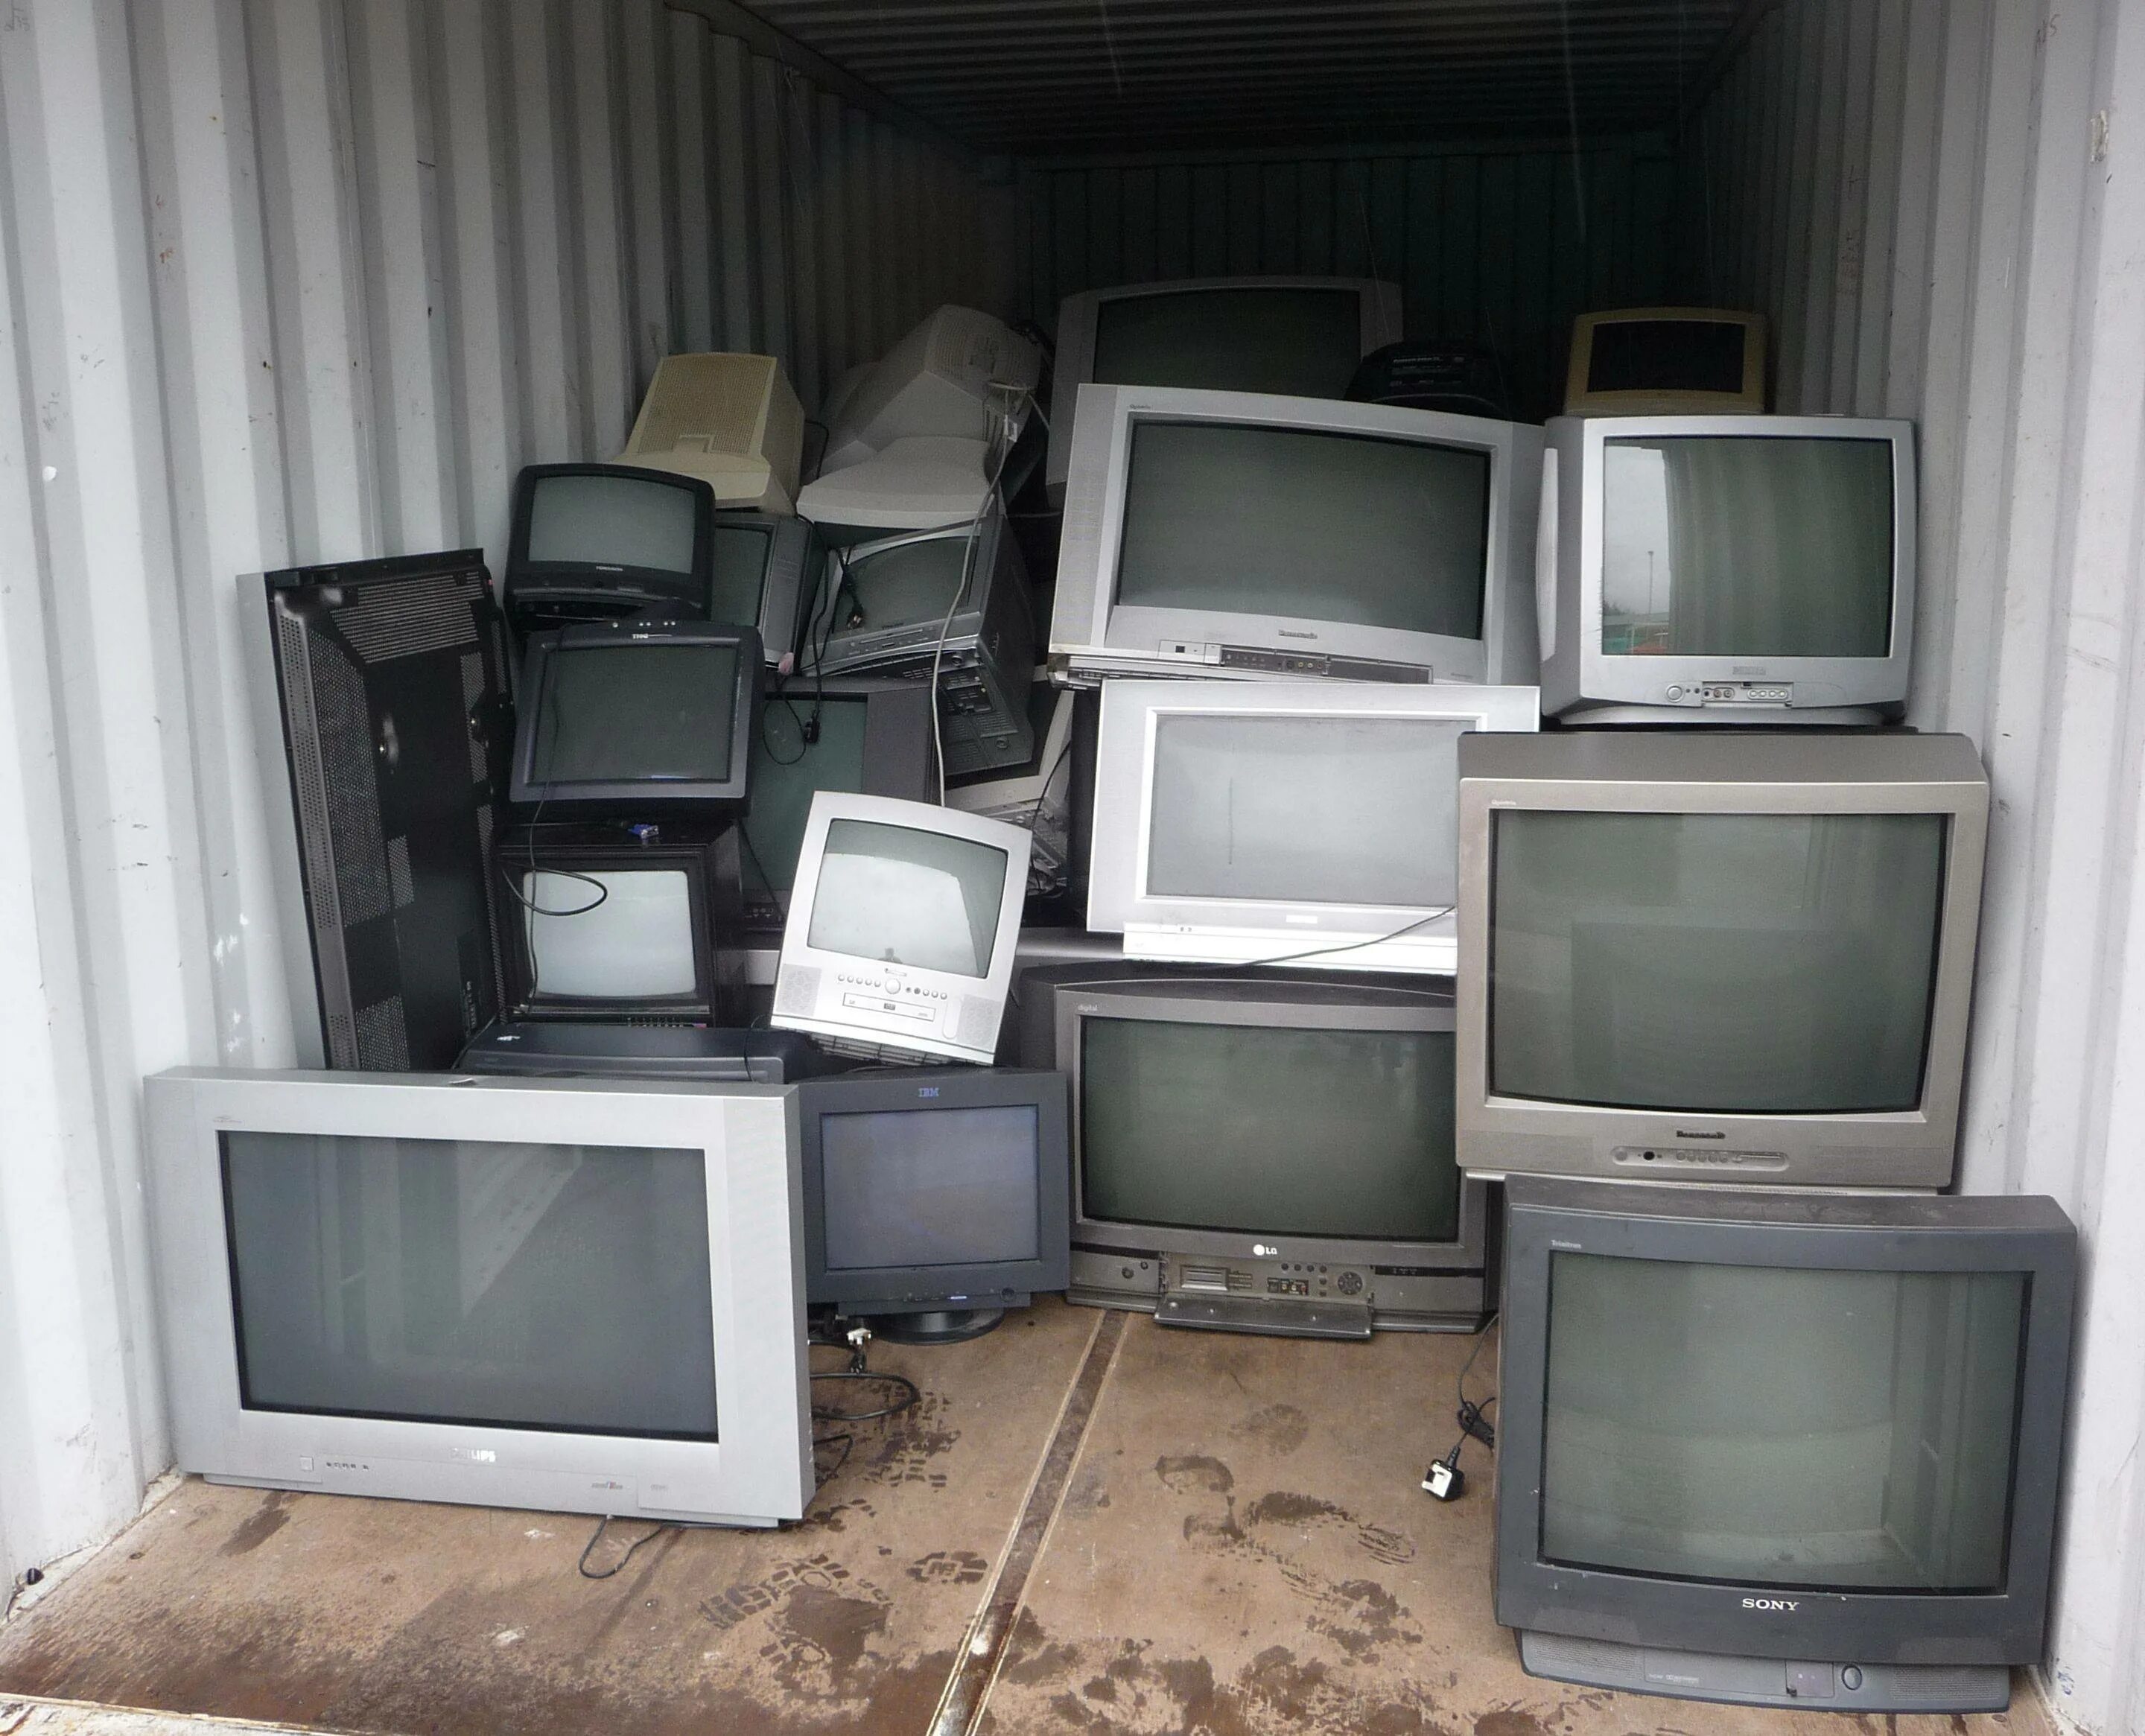 Сдать бу телевизор. Старый телевизор. Телевизор с кинескопом. Скупают старые телевизоры. Старый кинескопный телевизор.